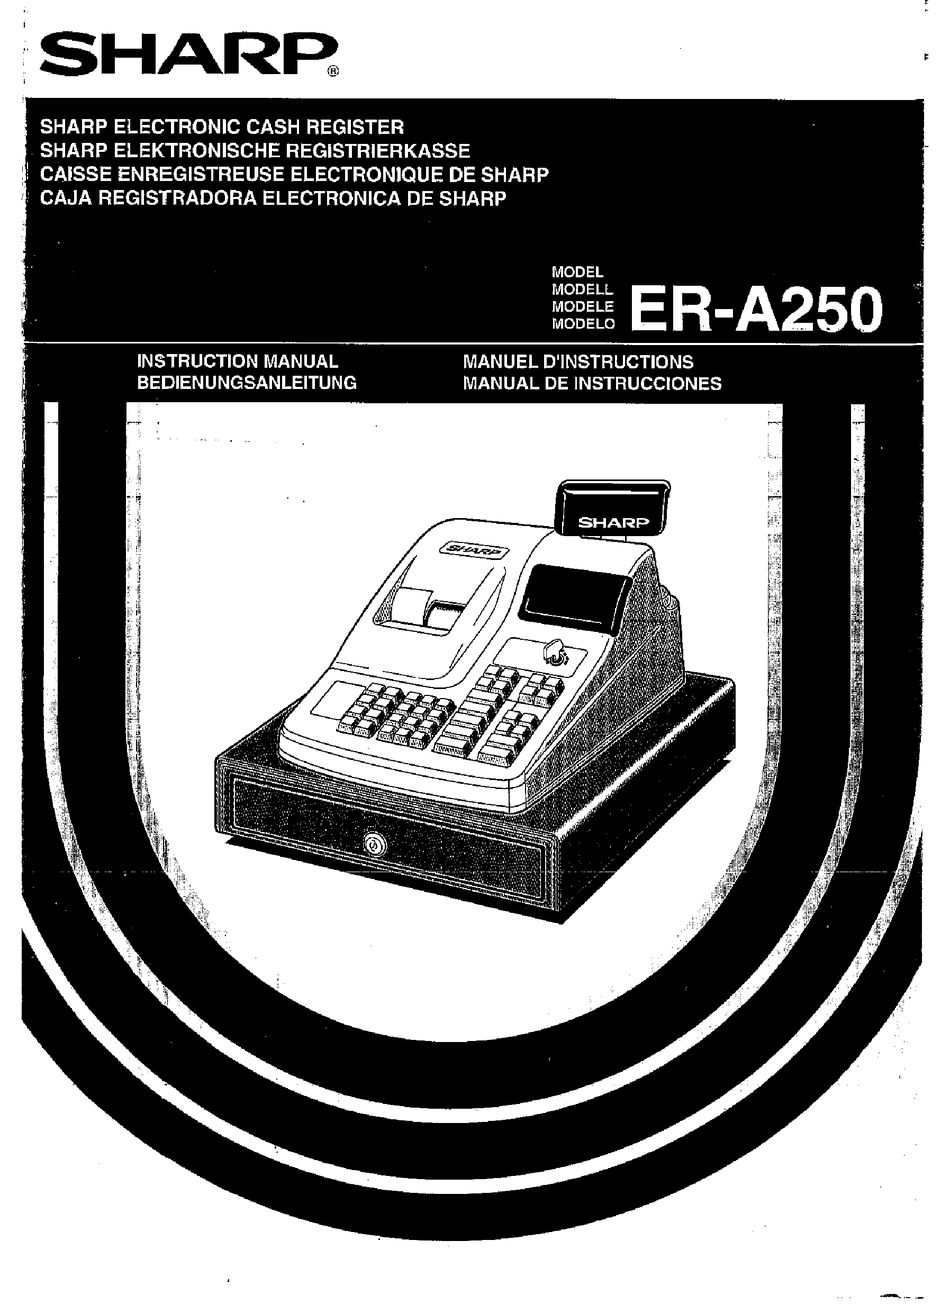 SHARP ER-A250 INSTRUCTION MANUAL Pdf Download | ManualsLib